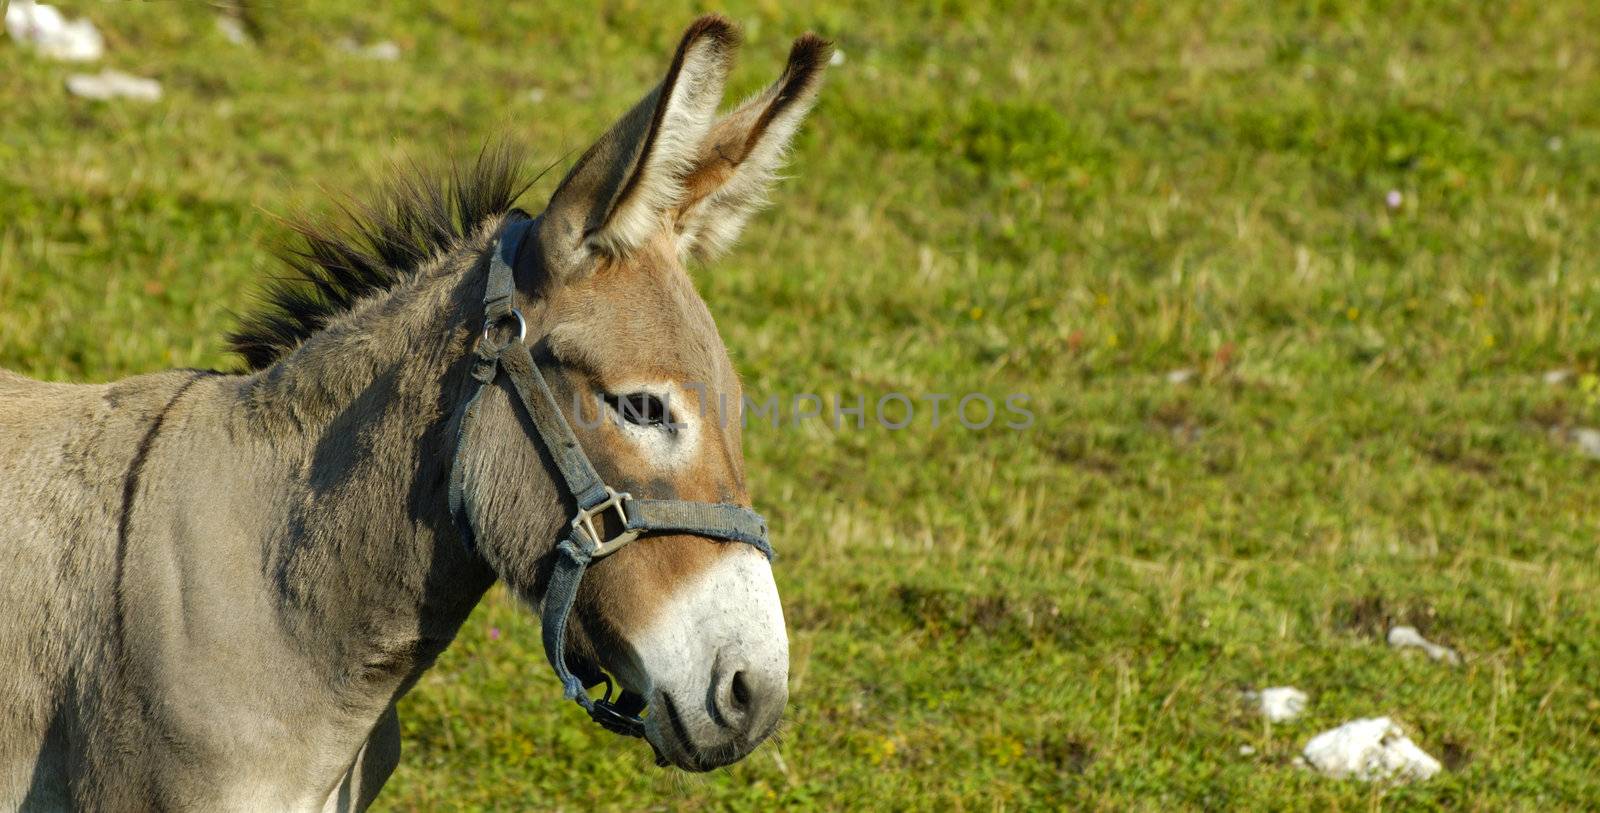 Little donkey by Bateleur